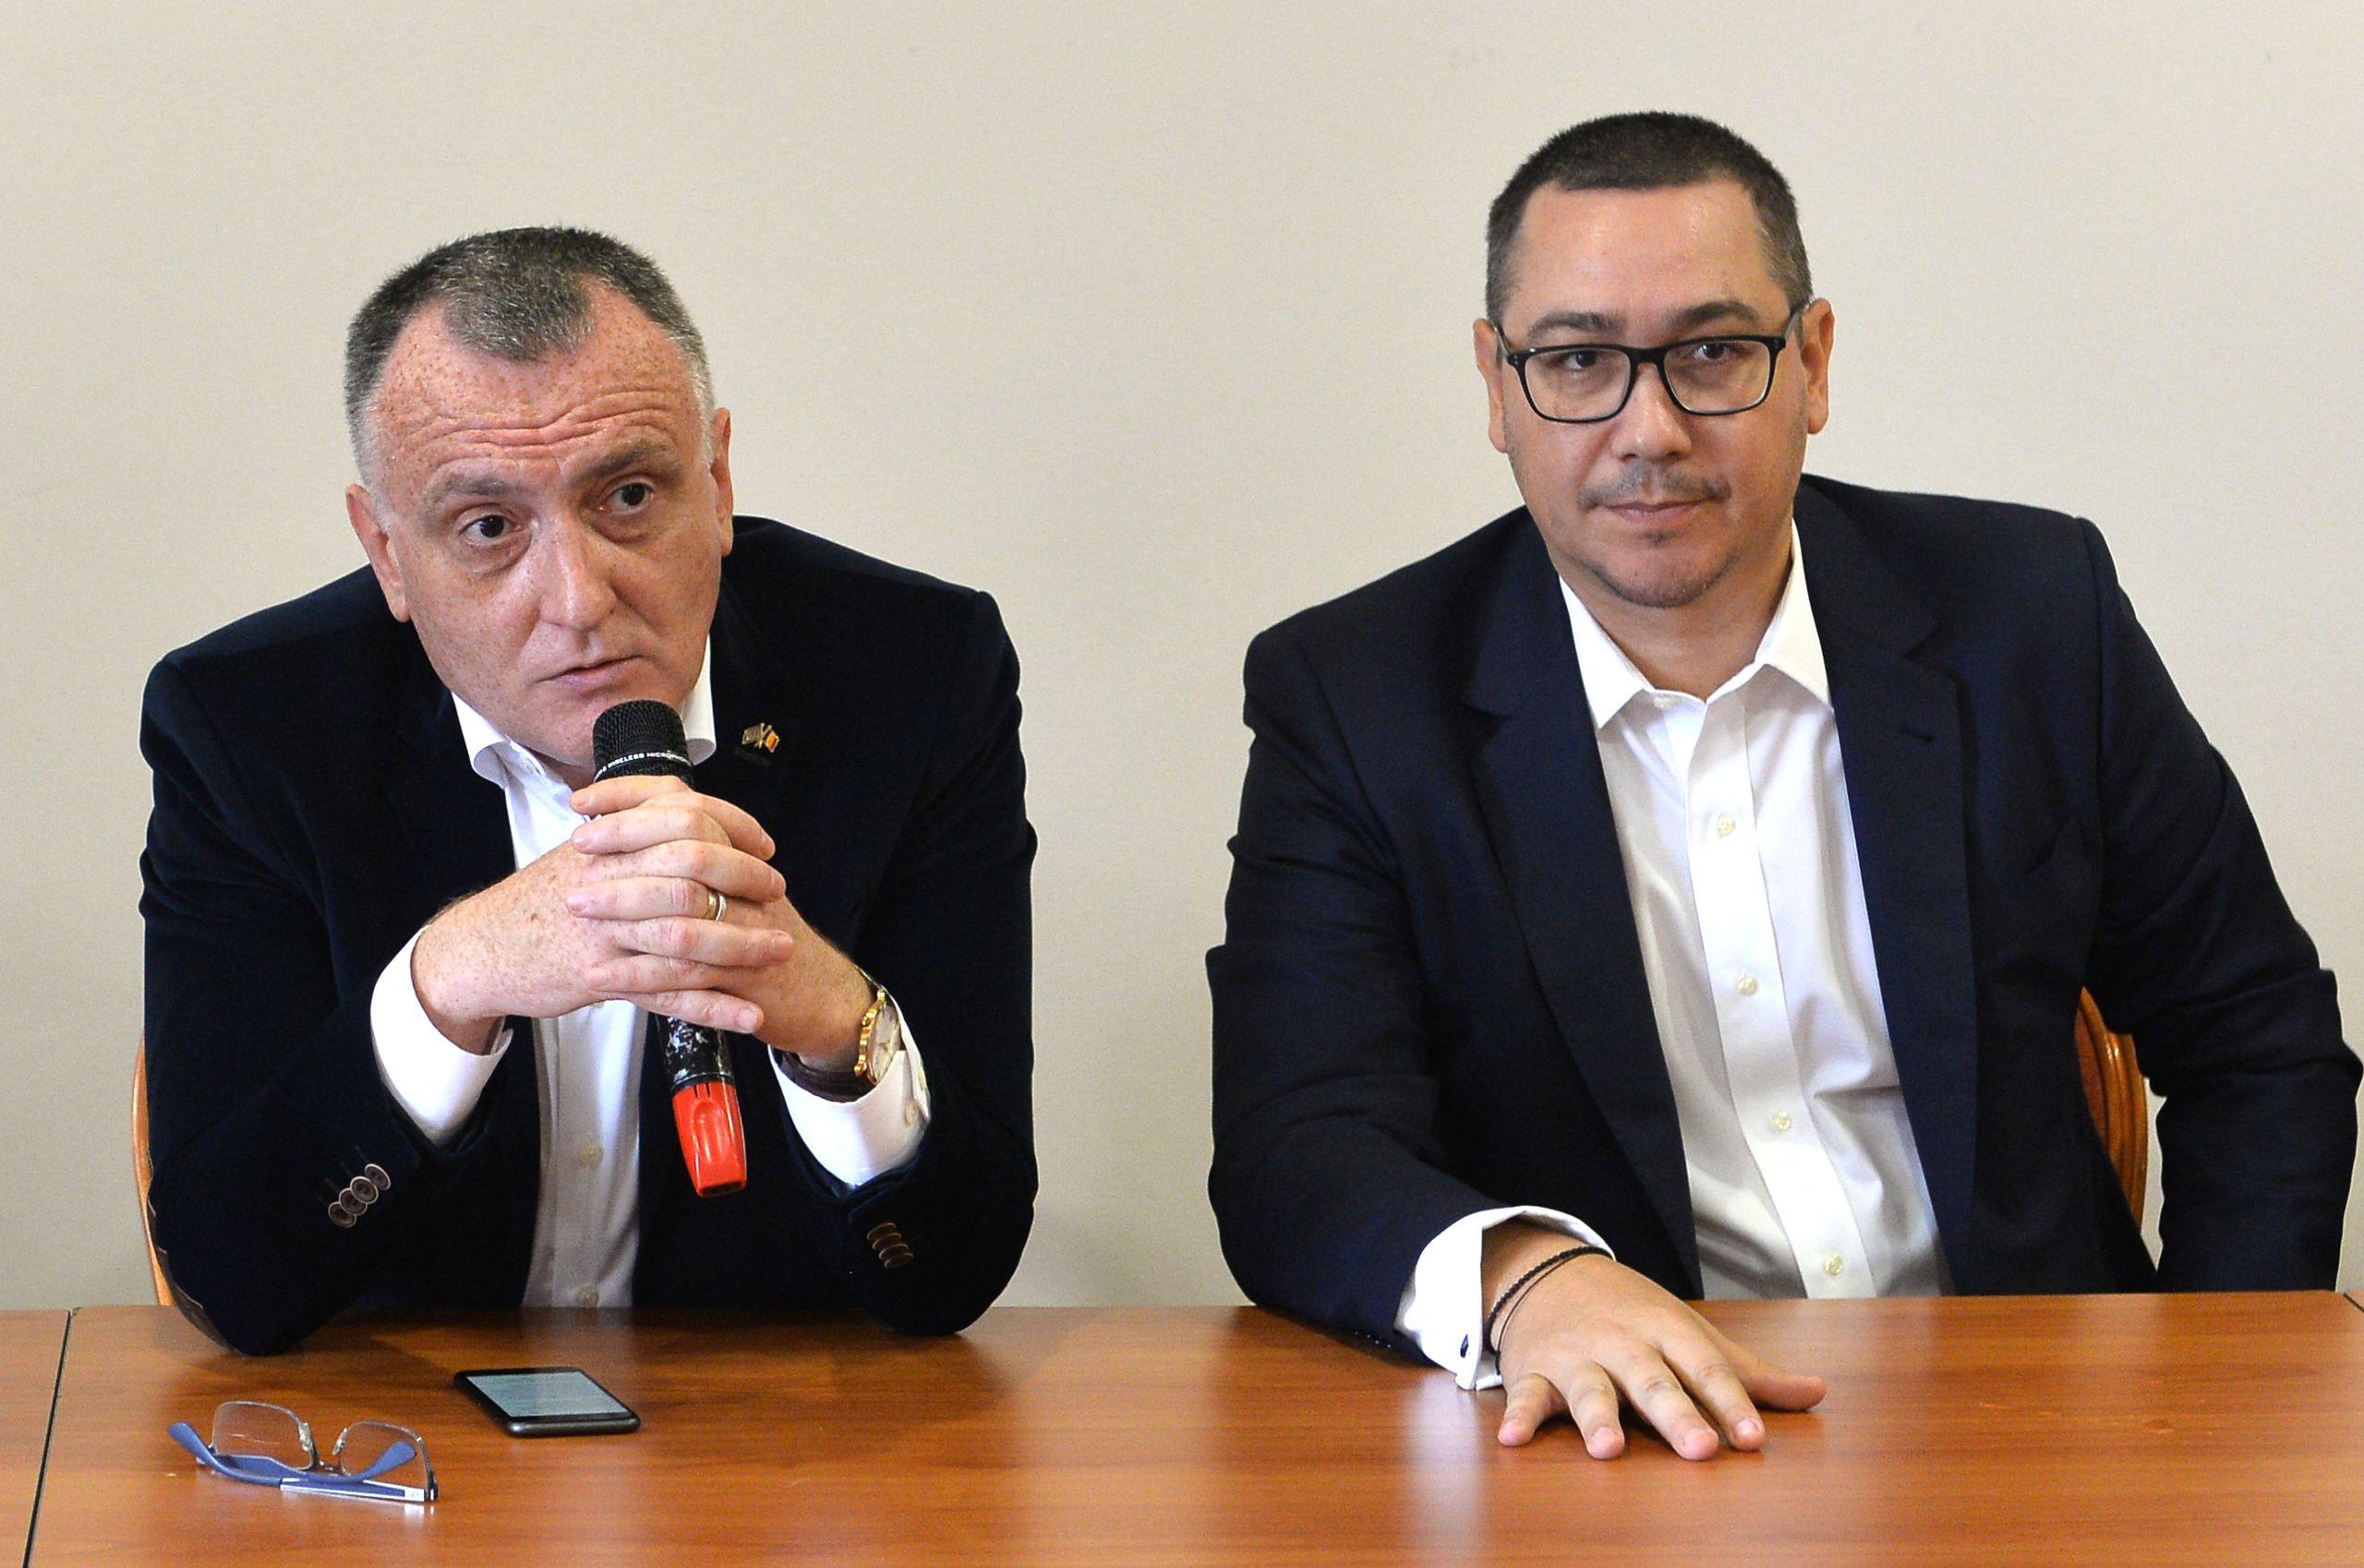 Sorin Cîmpeanu și Victor Ponta, fondatori ai partidului ProRomânia, la o dezbatere politică desfășurată în octombrie 2018. FOTO: SIMION MECHNO / AGERPRES FOTO
